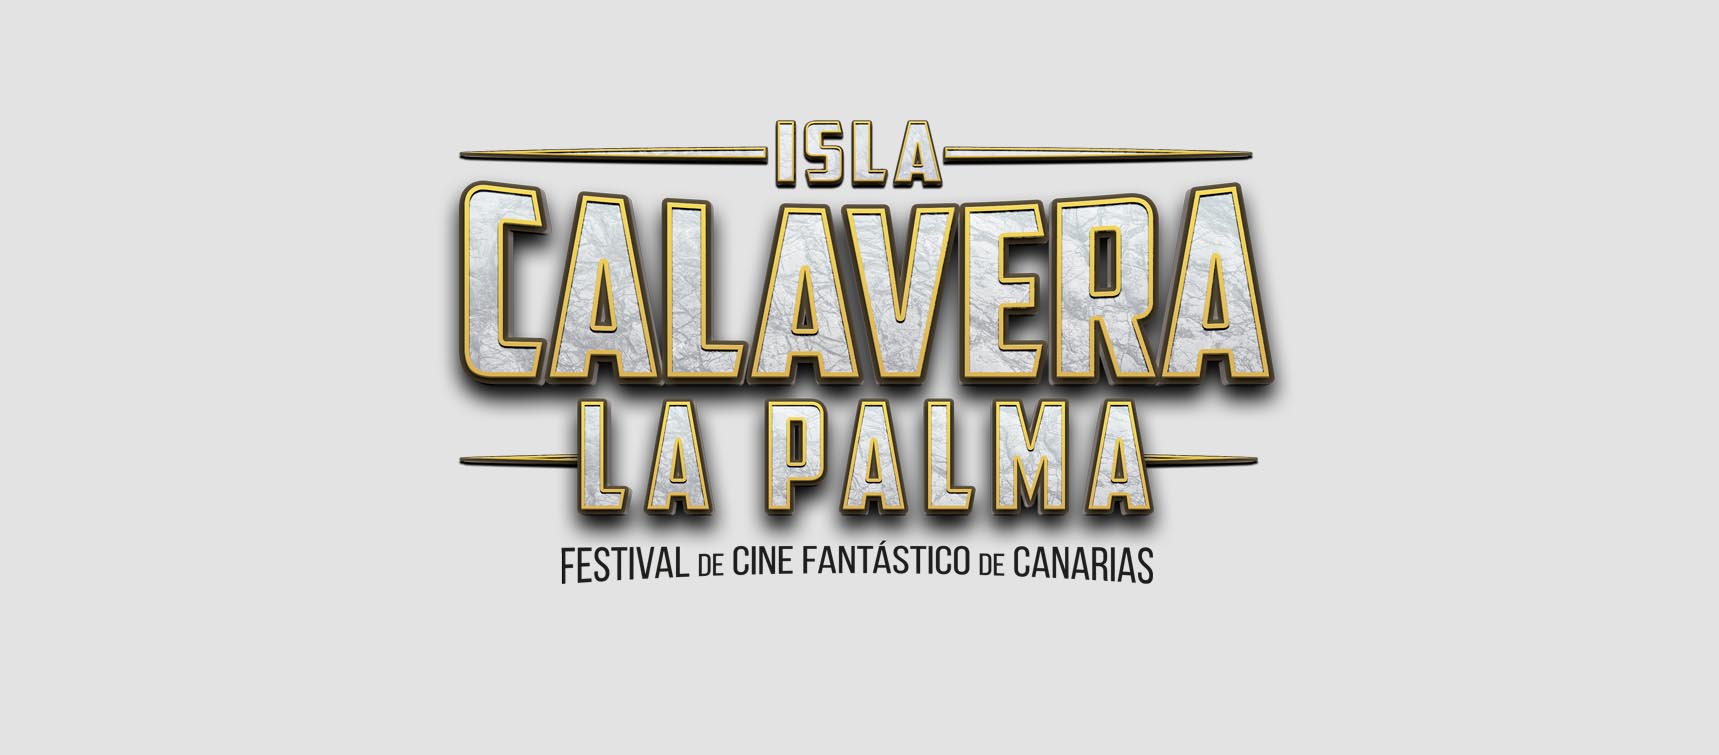 Edición especial organizada por el Festival Isla Calavera